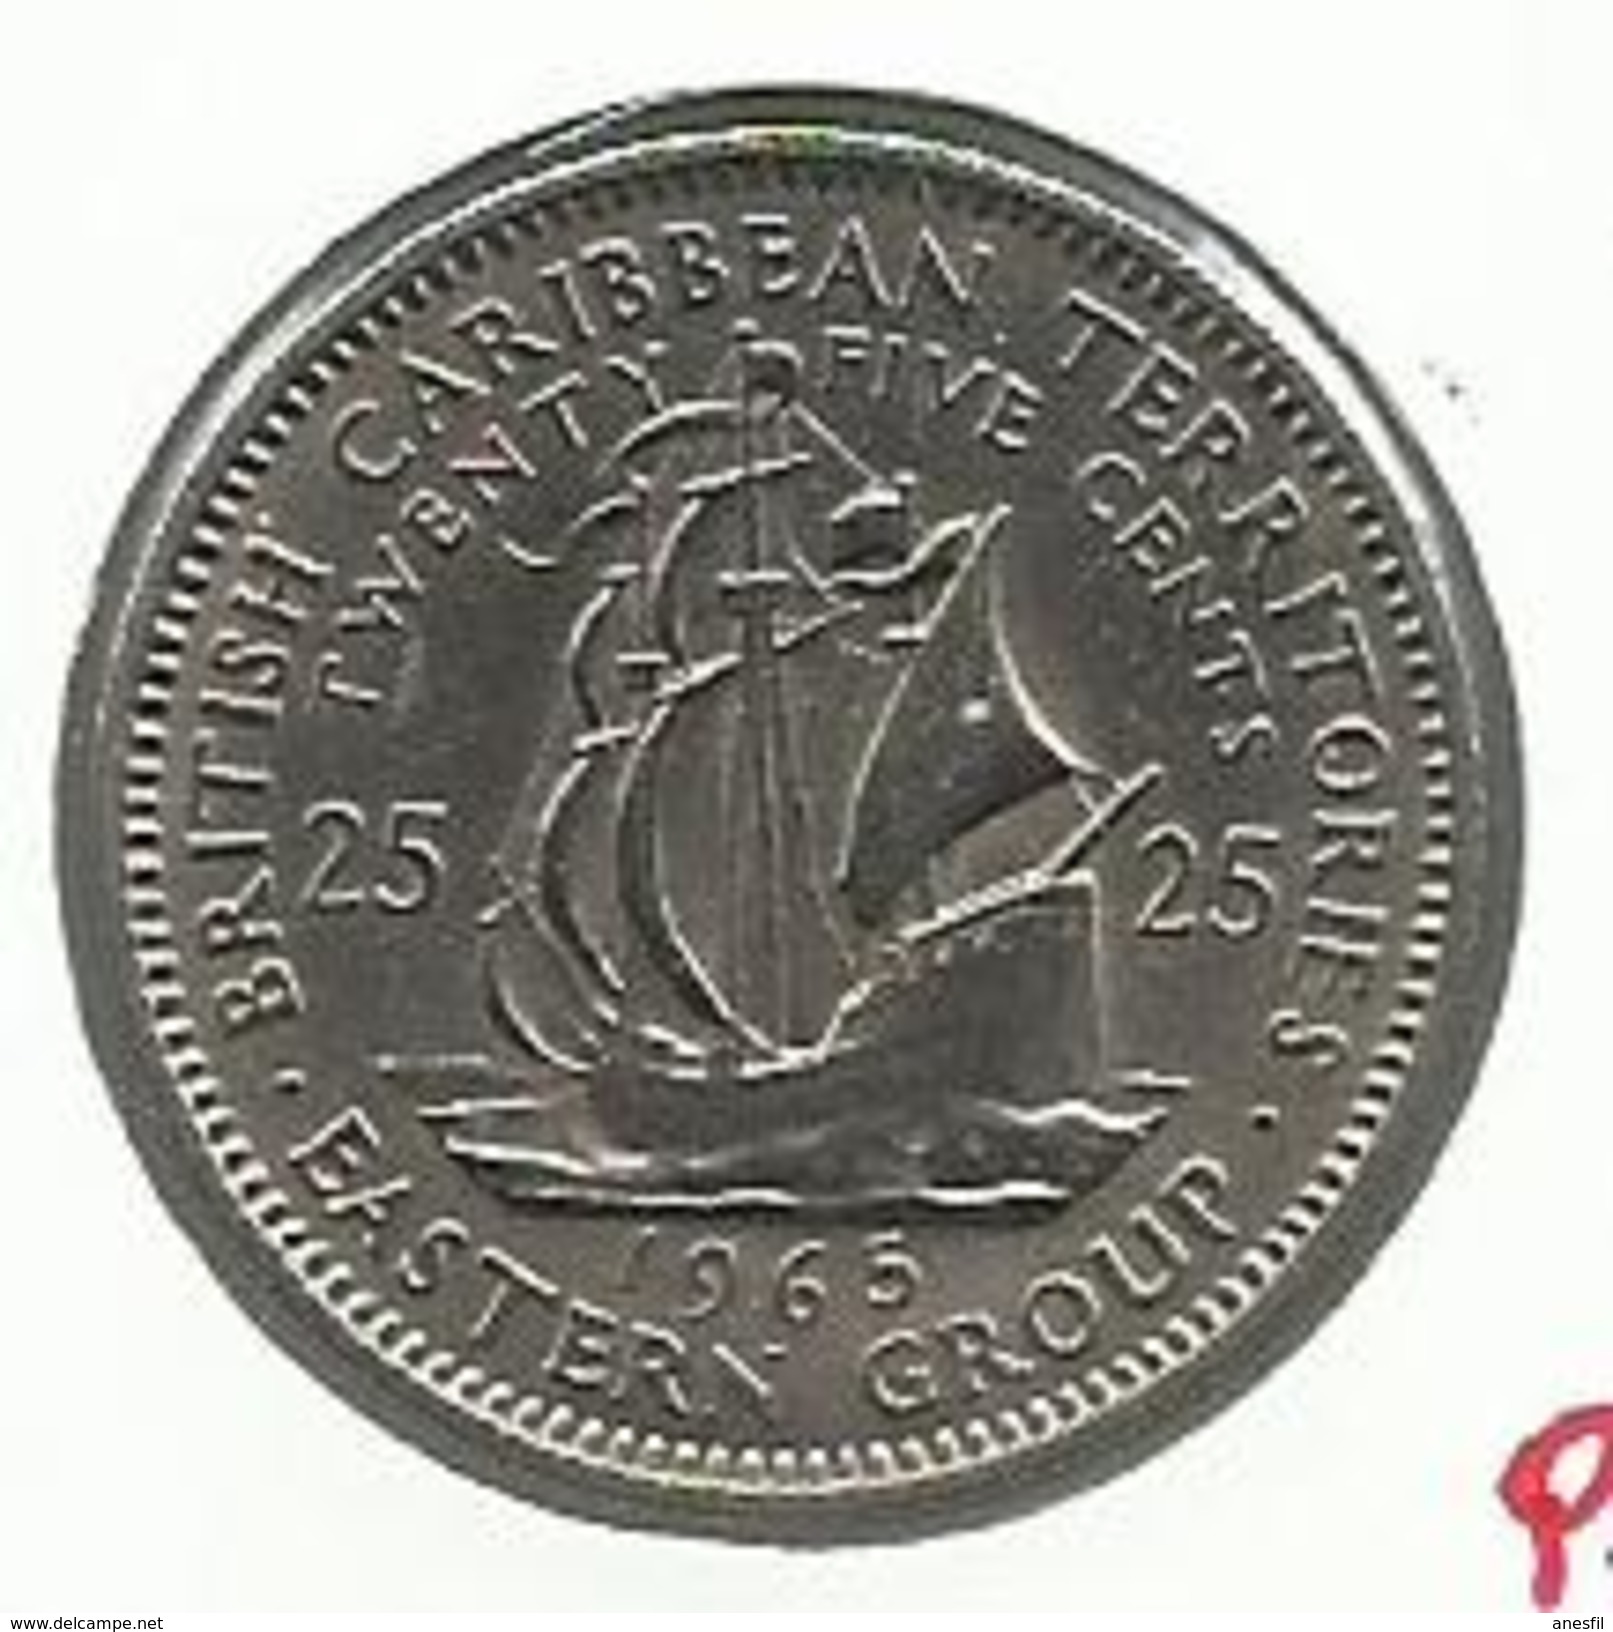 Territorios Del Caribe_1965_25 Céntimos - Caribe Británica (Territorios Del)